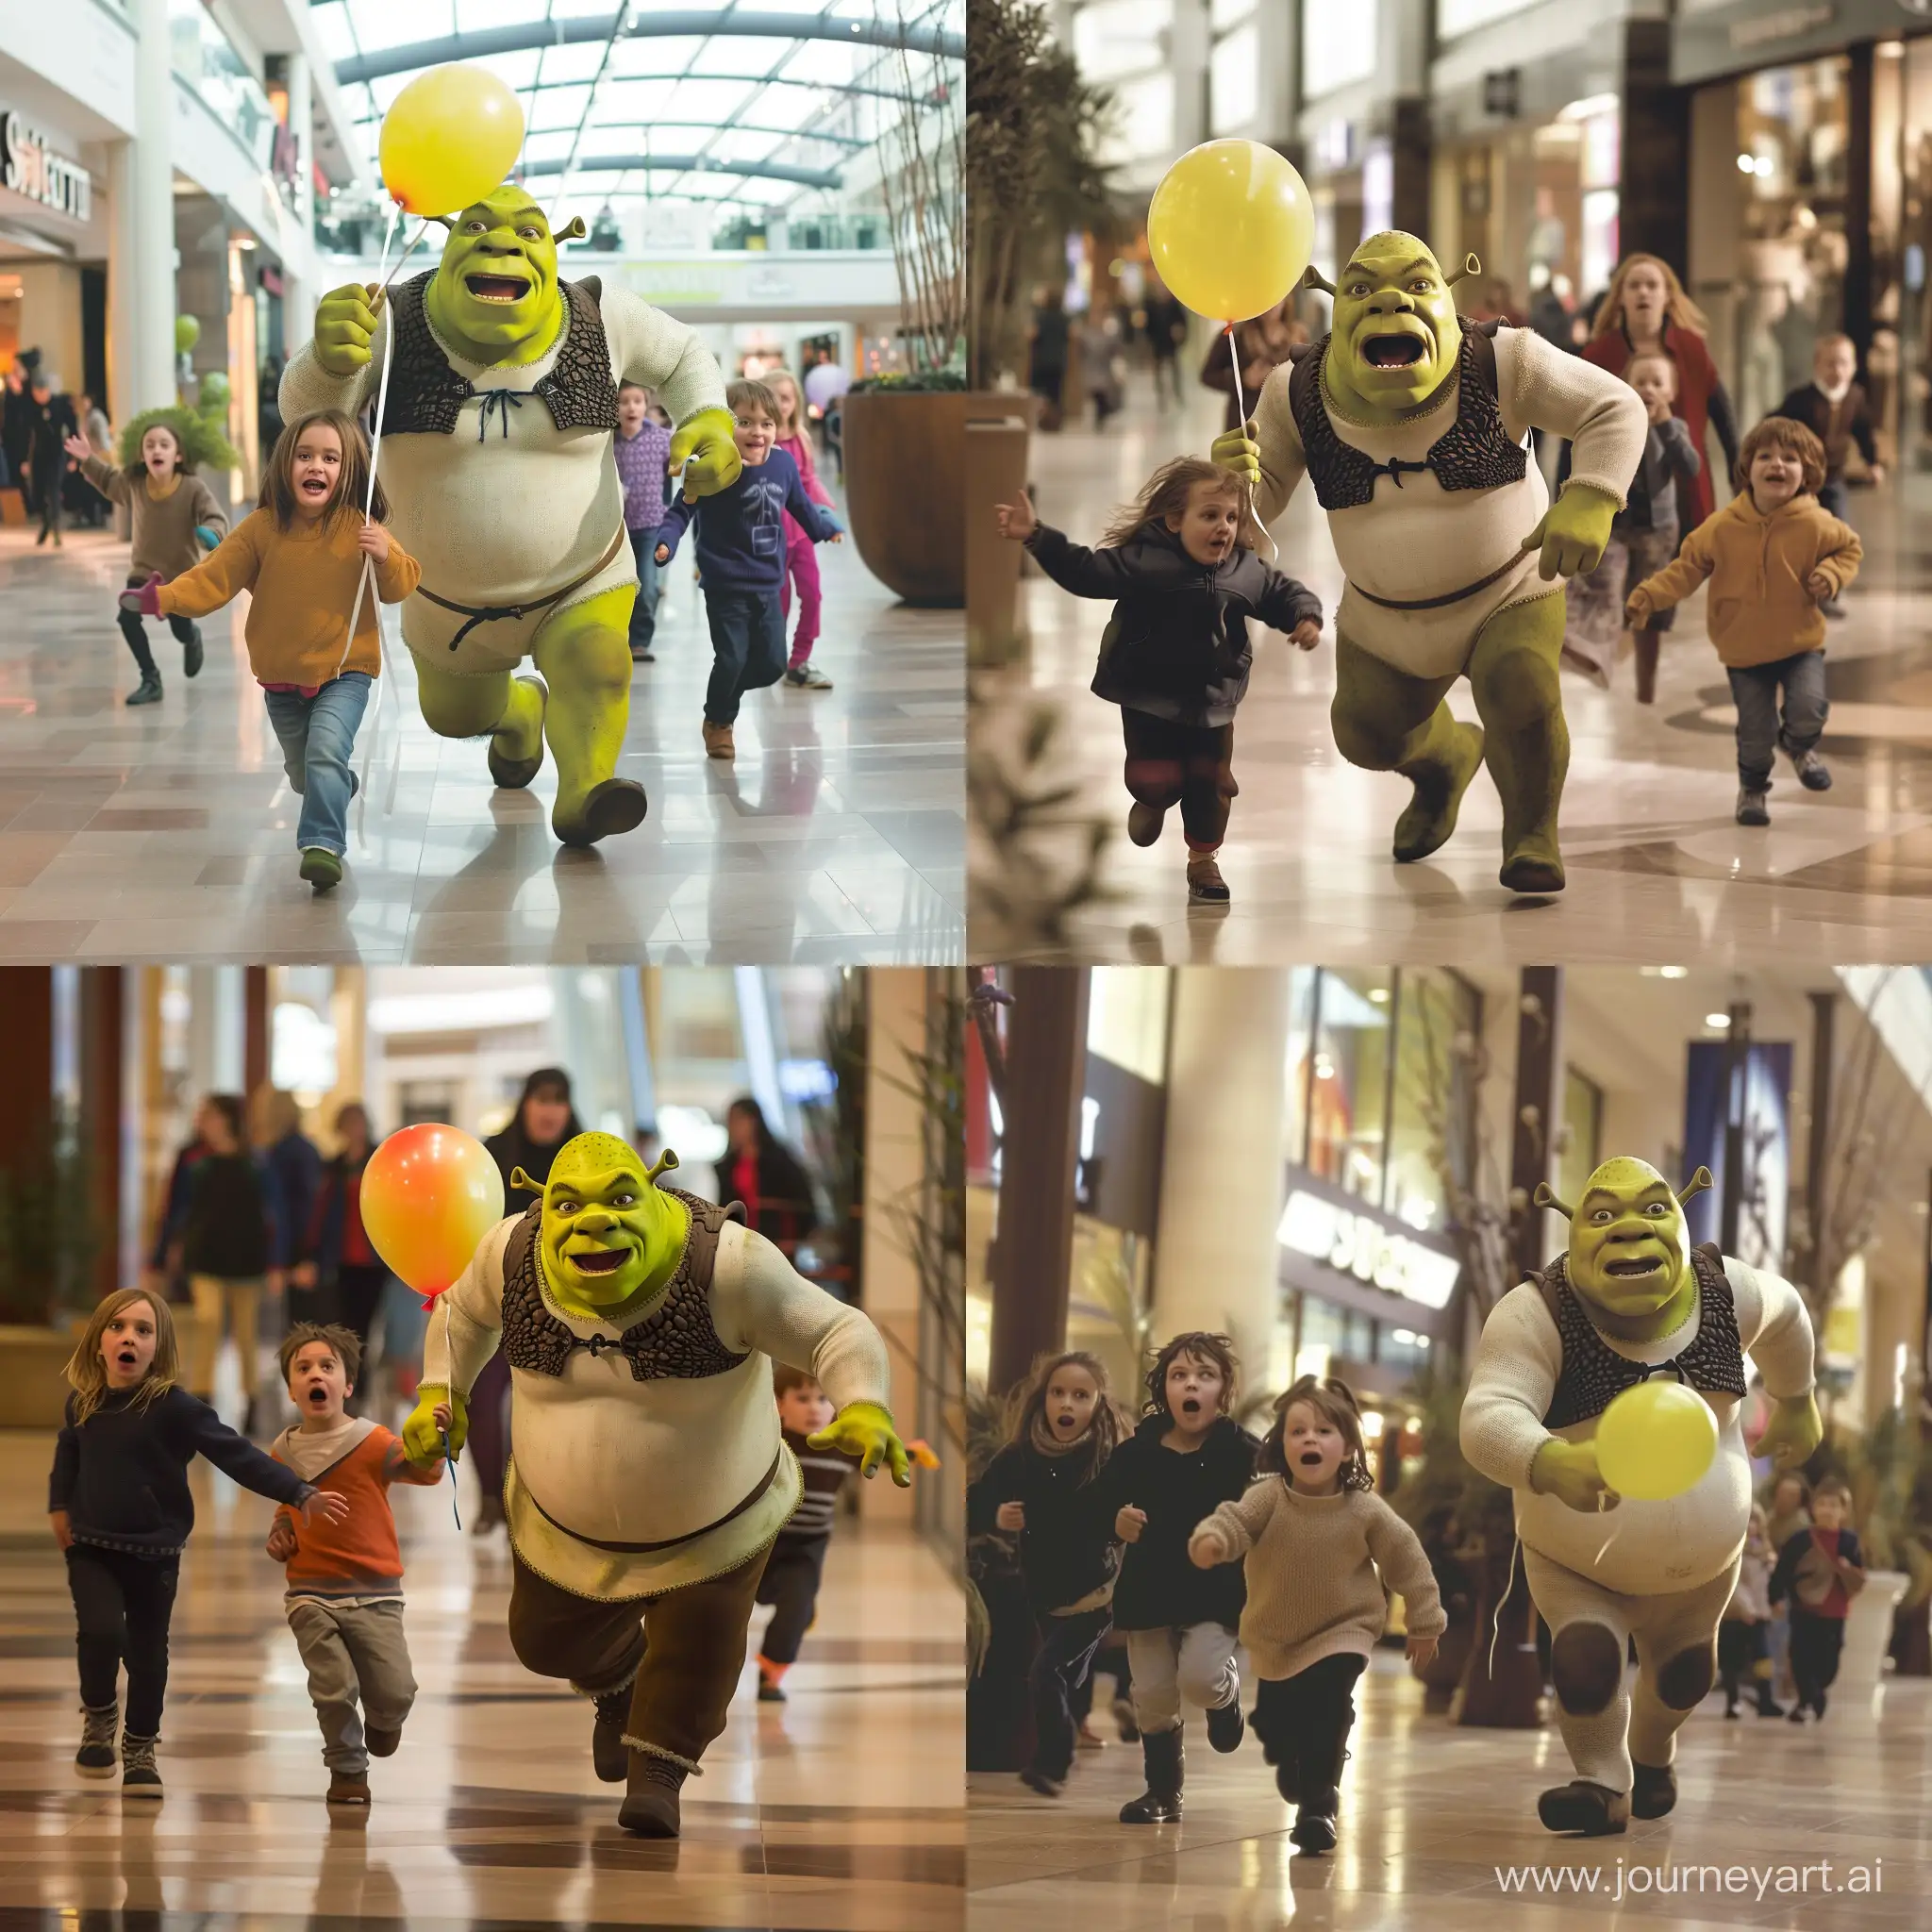 Испуганные дети, в торговом центре, убегают от Шрека, шрек сзади бежит и держит воздушный шар